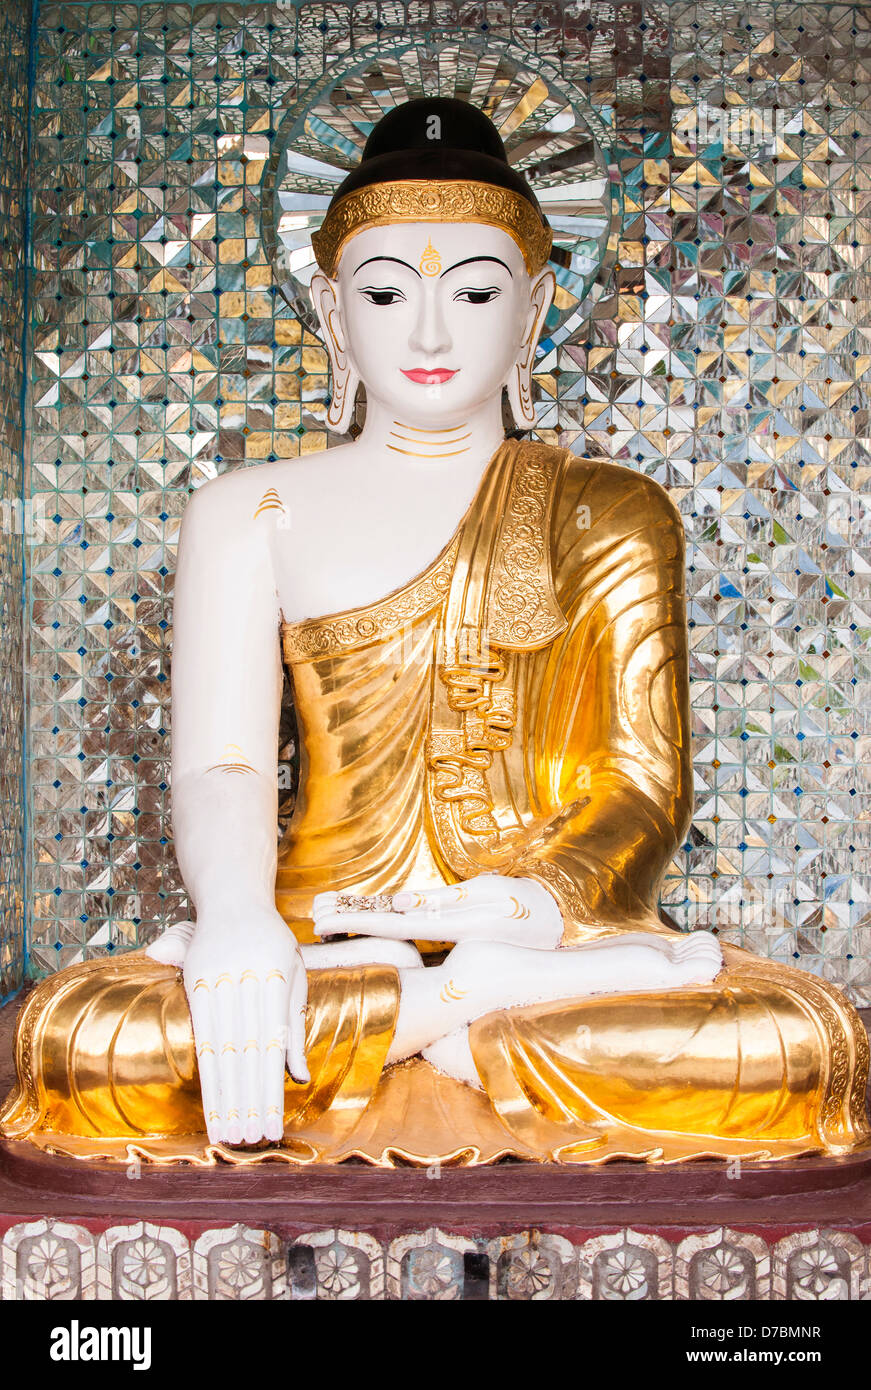 Buddha statue, Shwedagon Pagoda, Yangon, Burma (Myanmar) Stock Photo